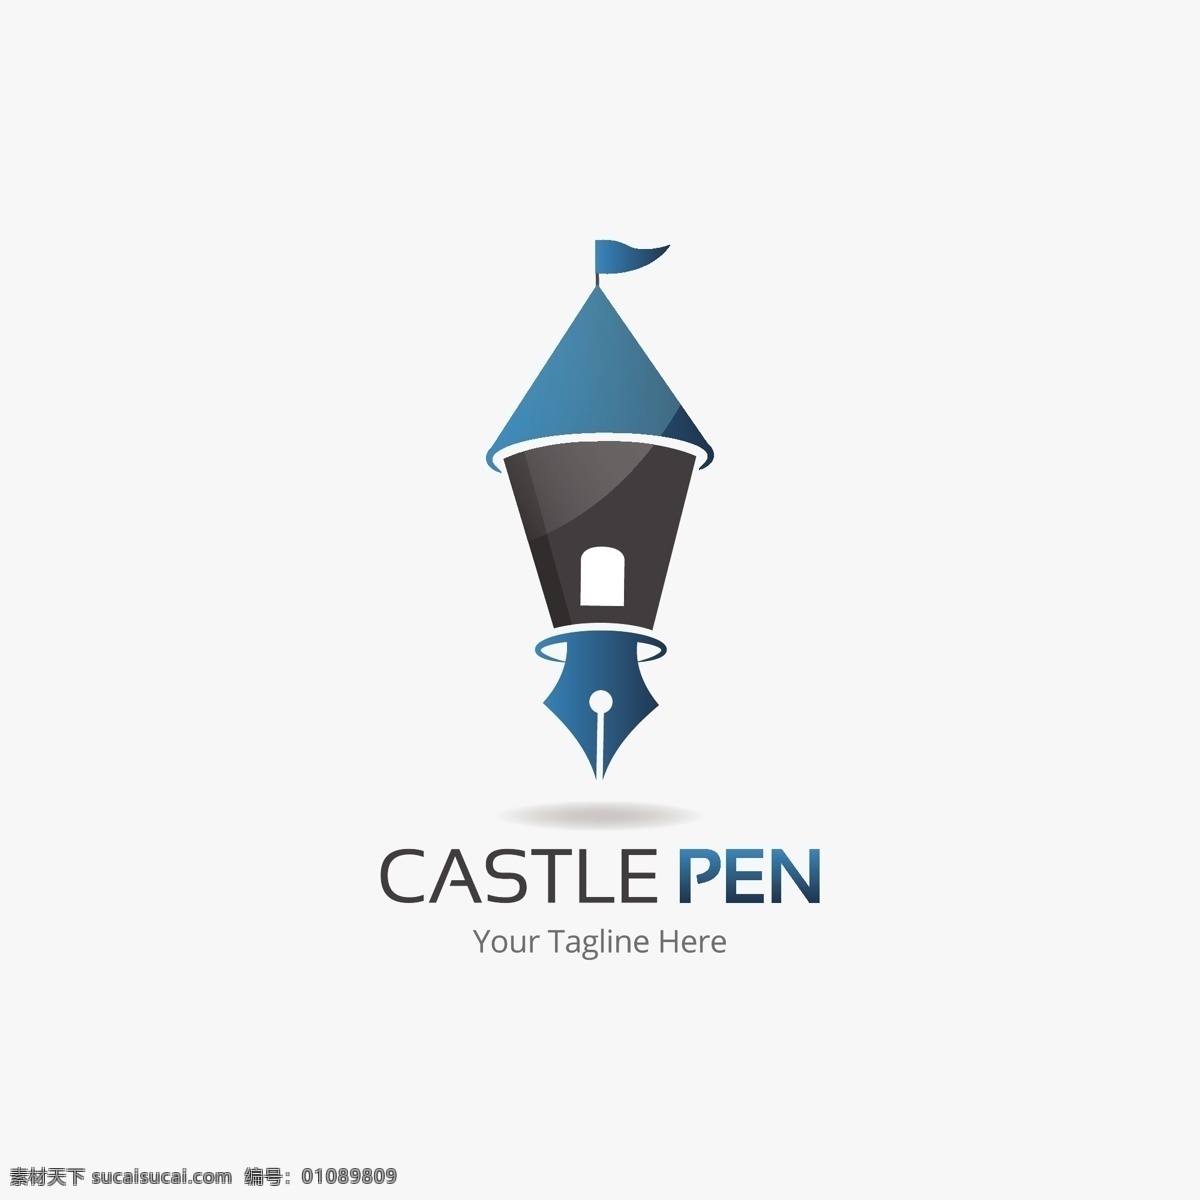 城堡 笔 创意 商务 标志 矢量 简约设计 矢量图标 广告logo